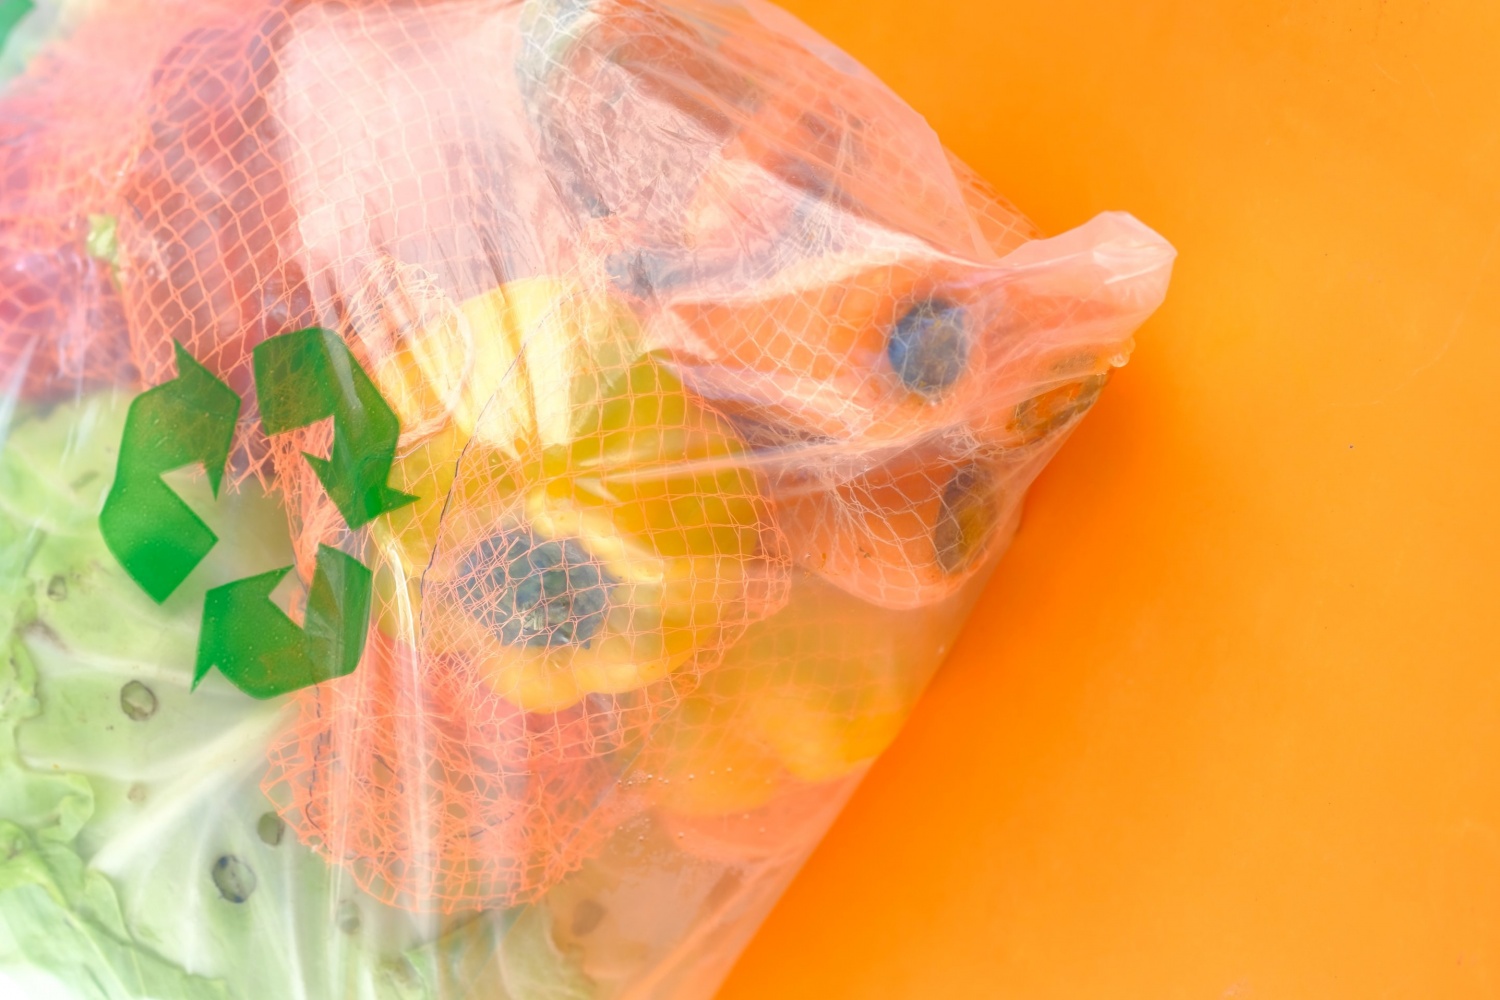 Walmart eliminating plastic bags in Colorado